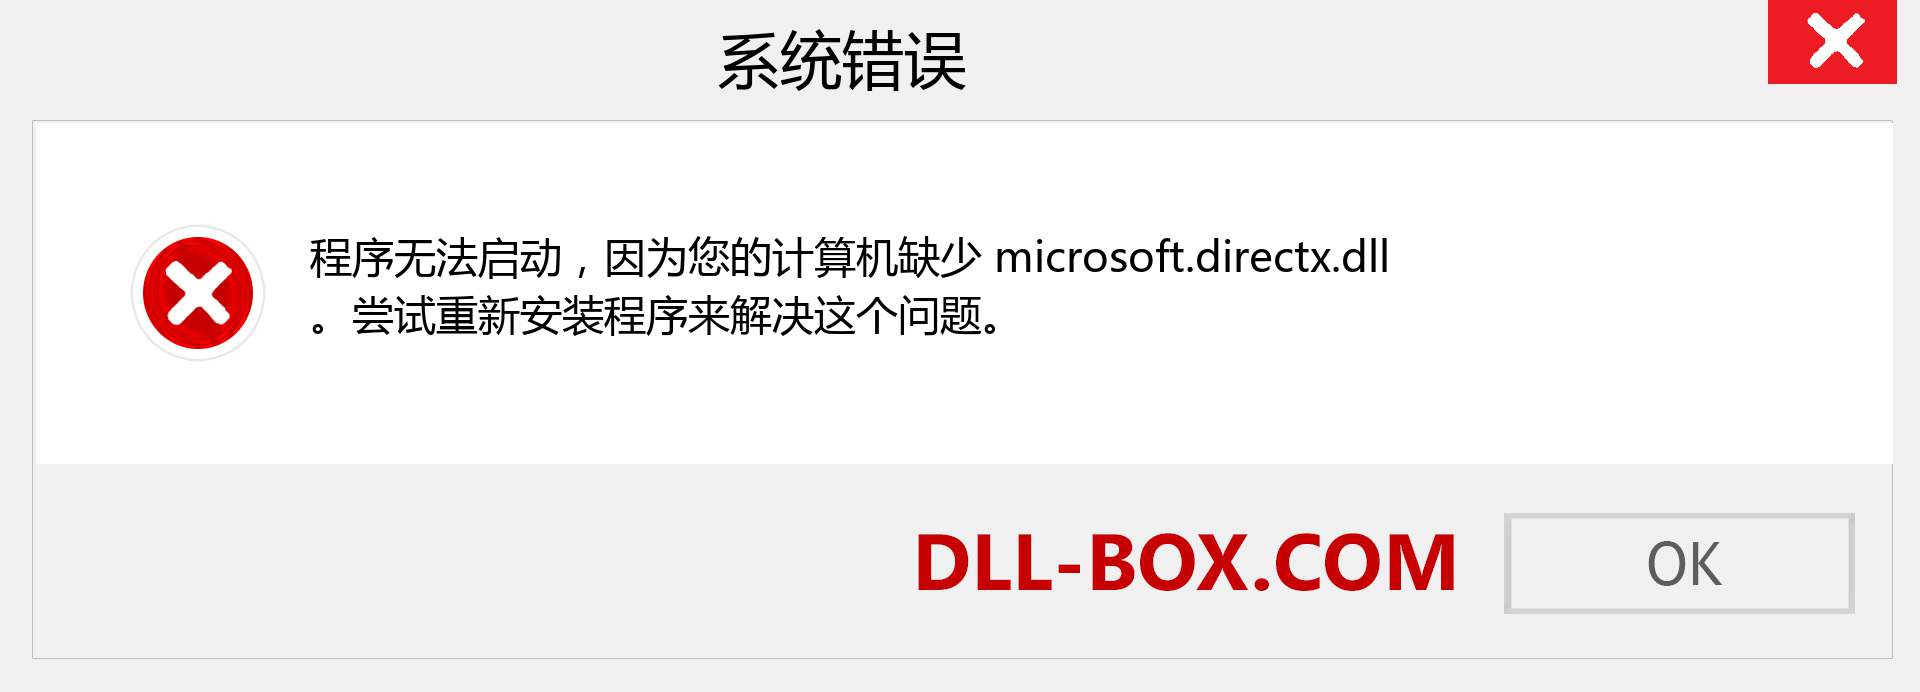 microsoft.directx.dll 文件丢失？。 适用于 Windows 7、8、10 的下载 - 修复 Windows、照片、图像上的 microsoft.directx dll 丢失错误